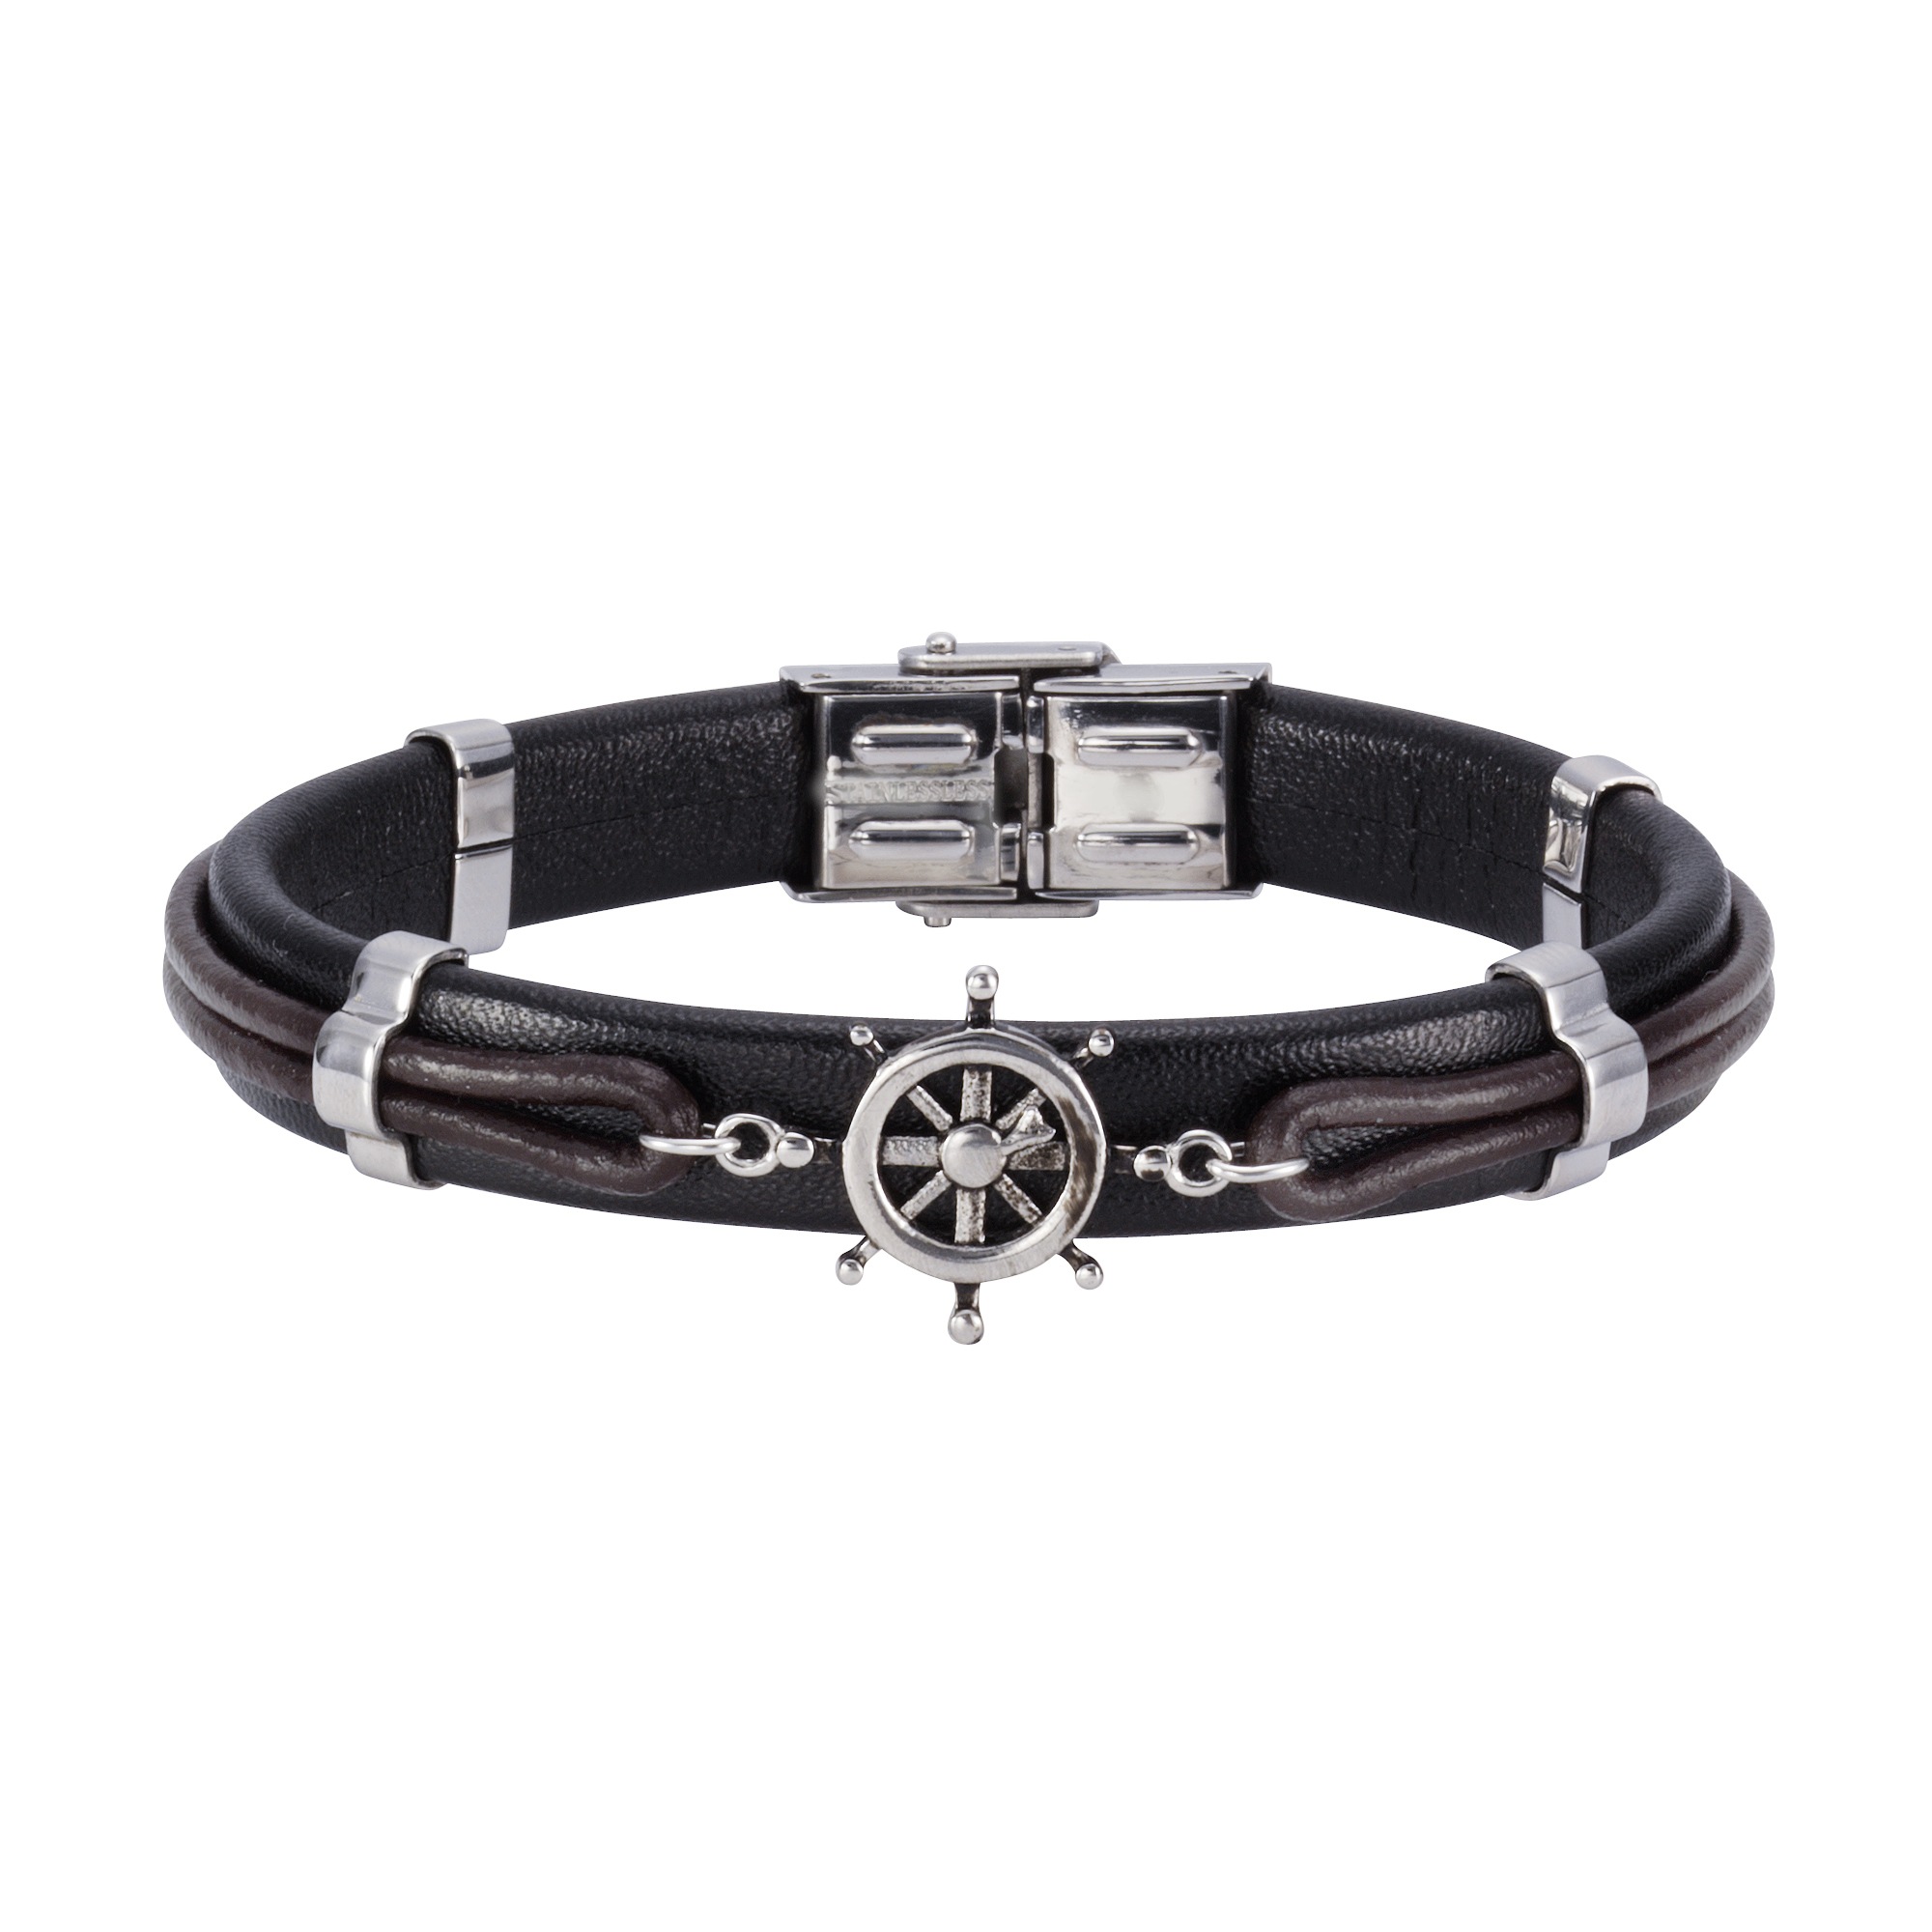 NOX Armband online »Leder BAUR | Edelstahl« bestellen braun schwarz